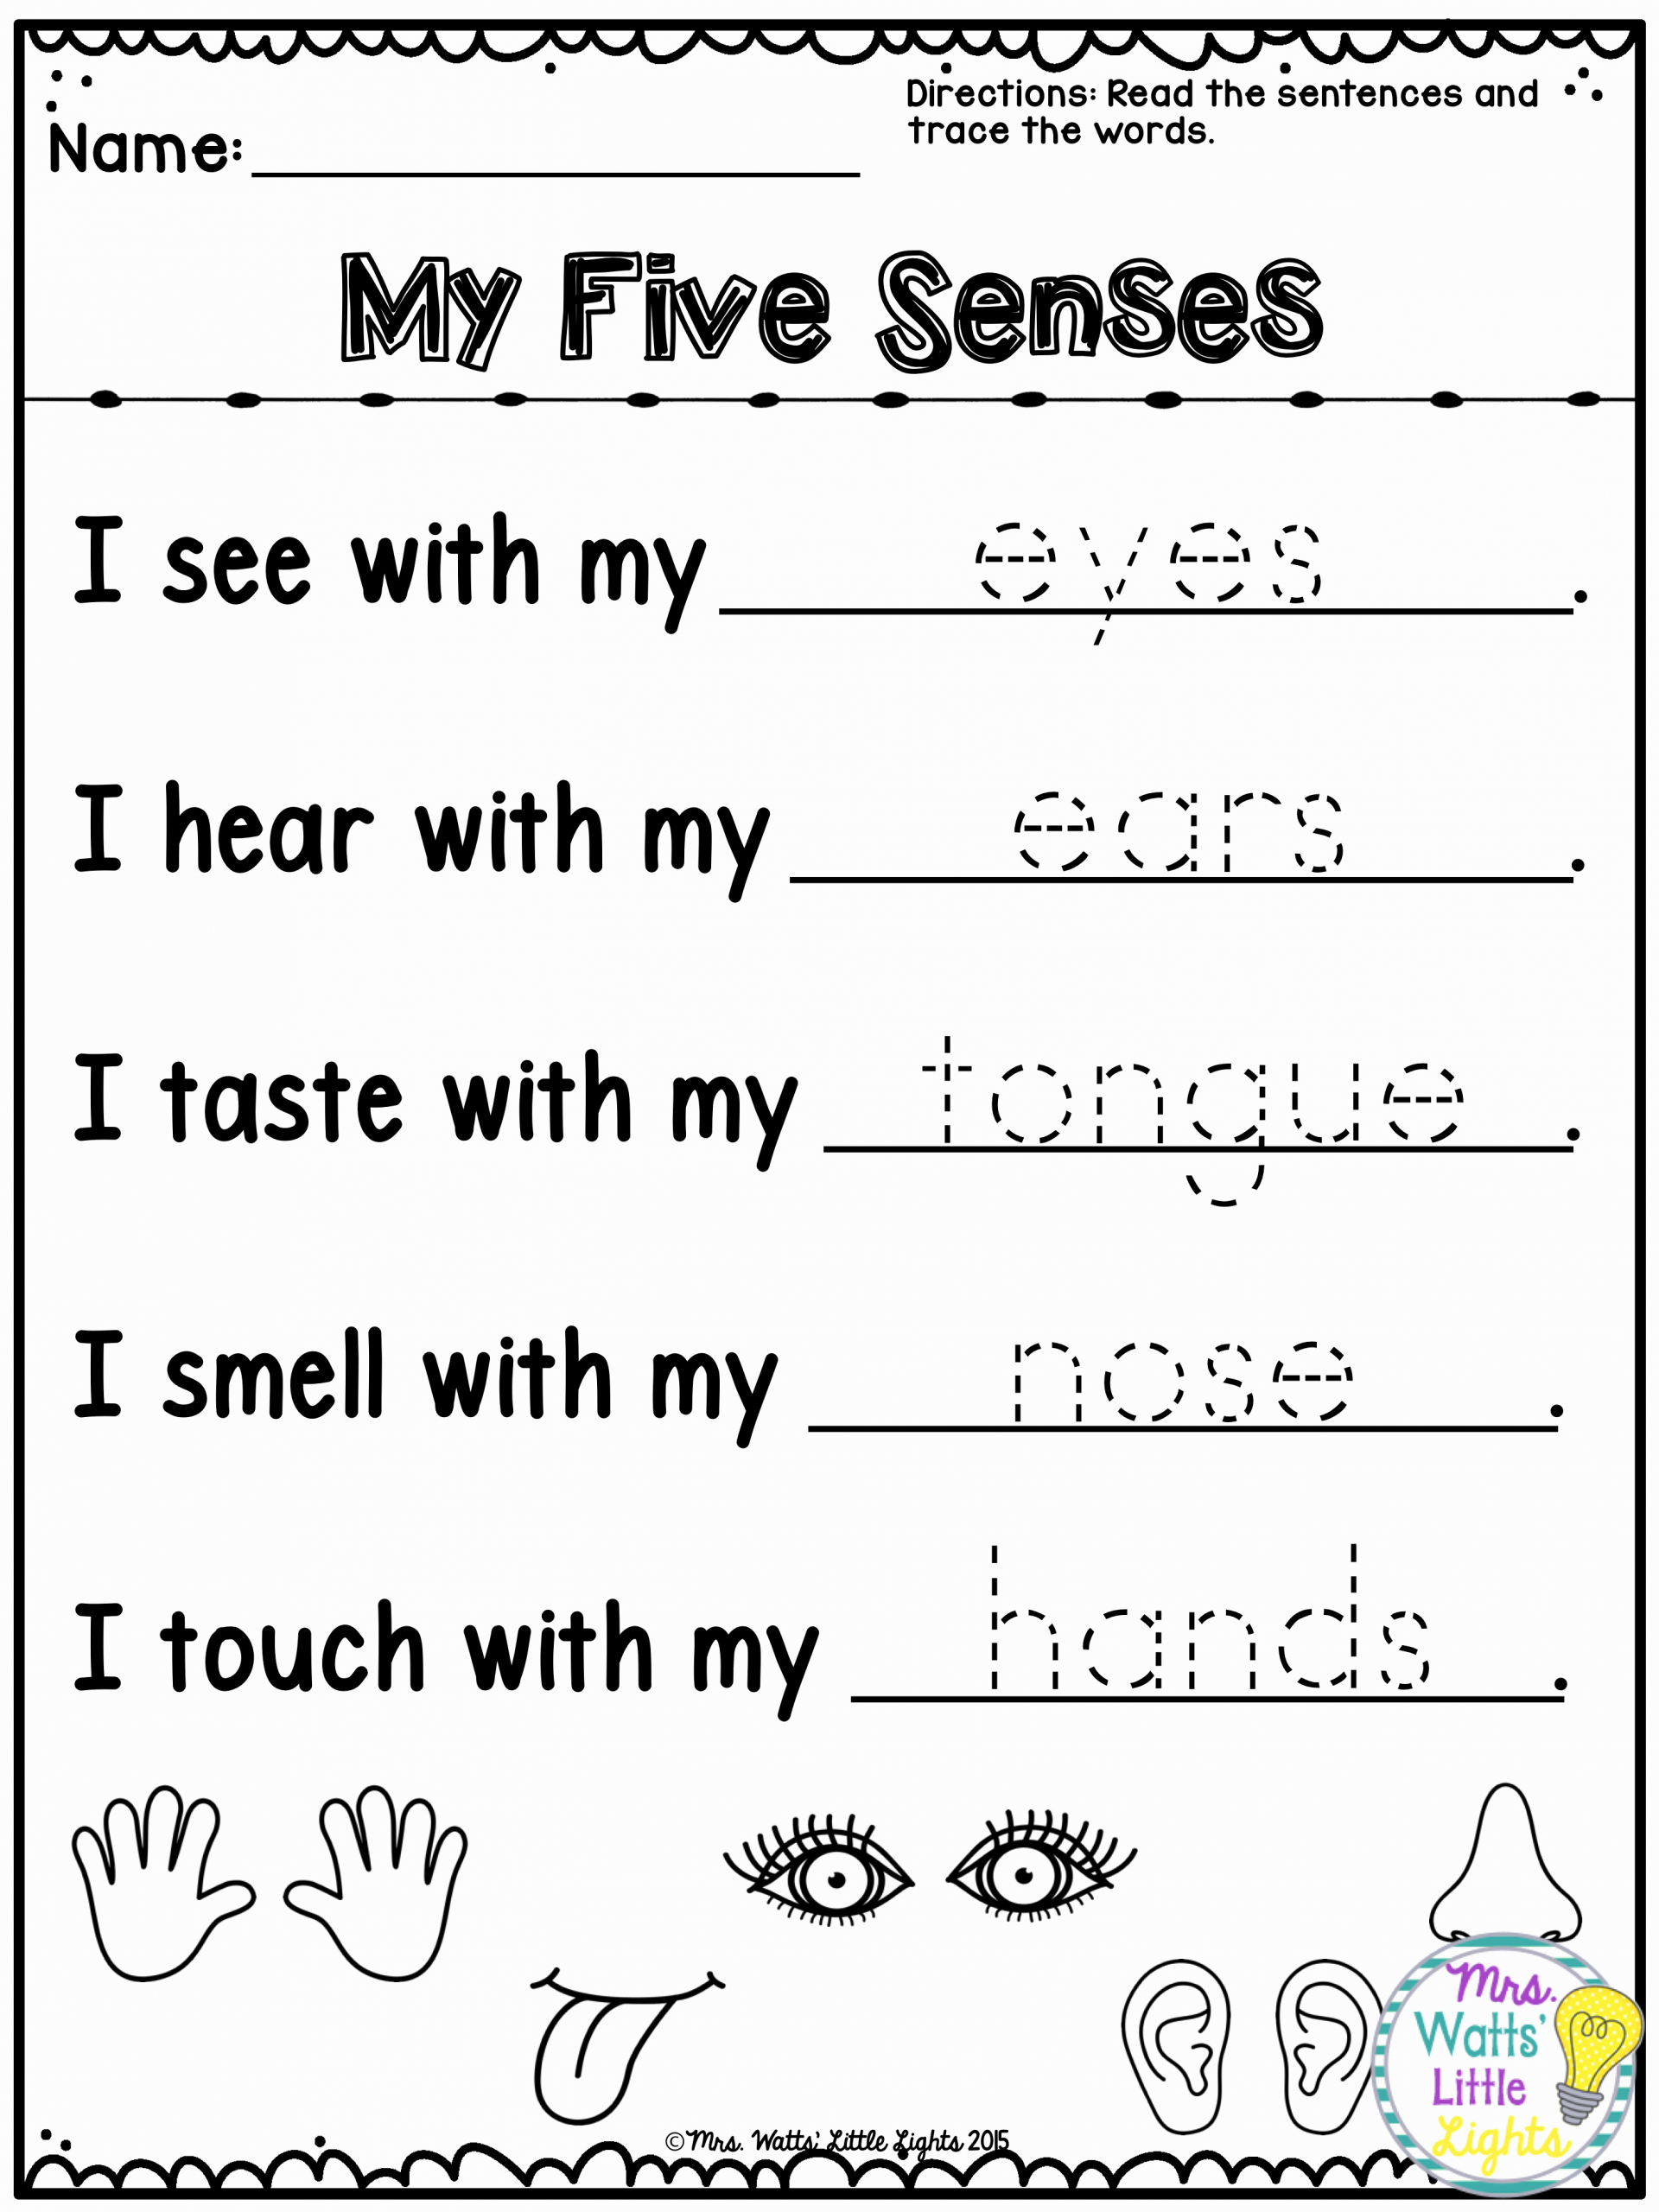 The Five Senses Worksheets Elegant Five Senses